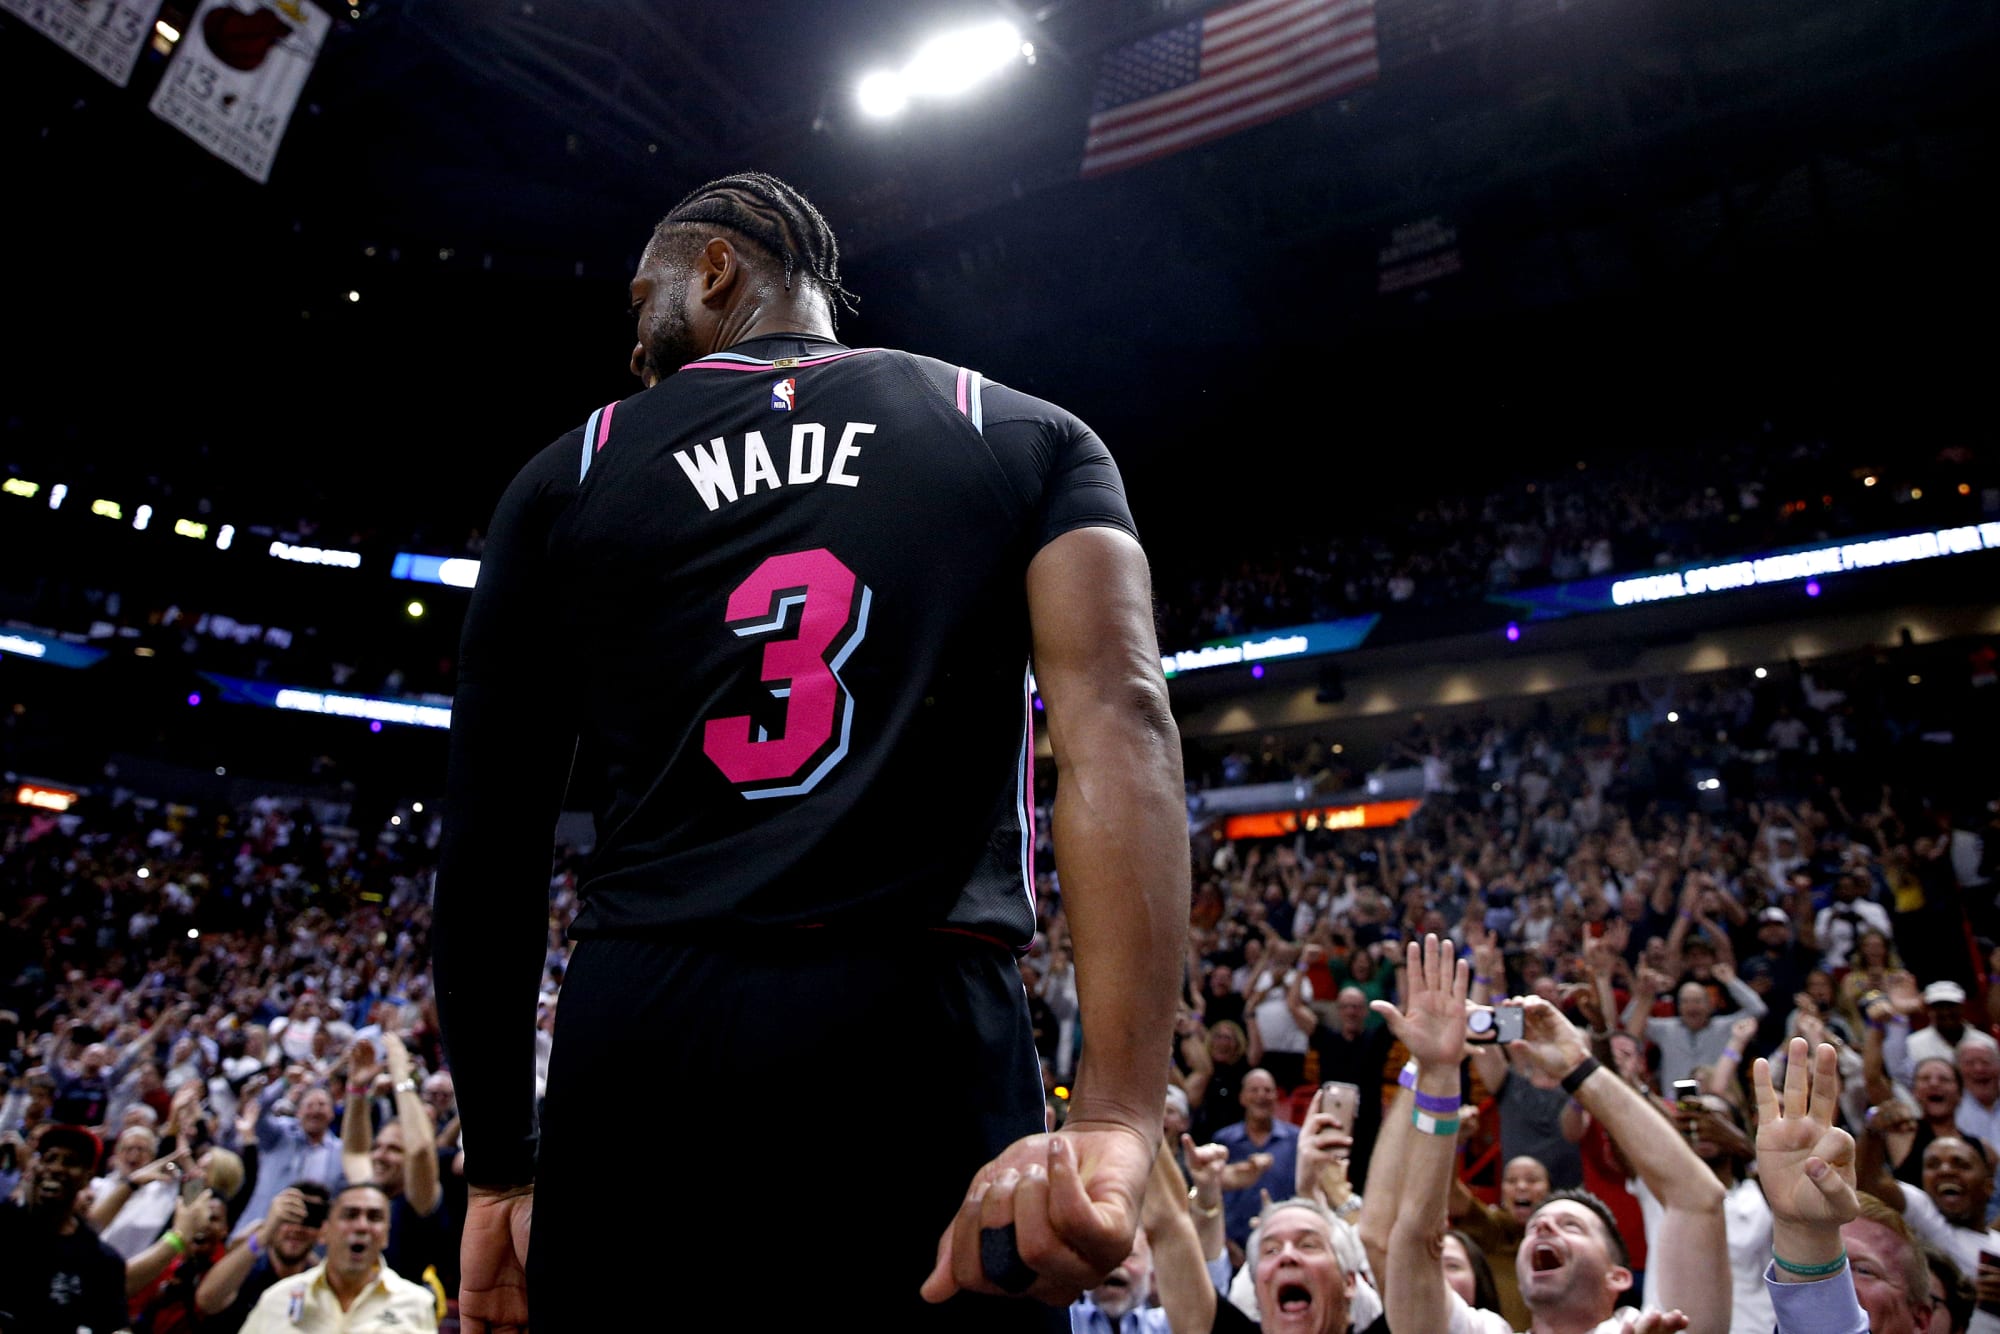 Miami Heat Dwyane Wade #3 City Vice Night Jersey - M